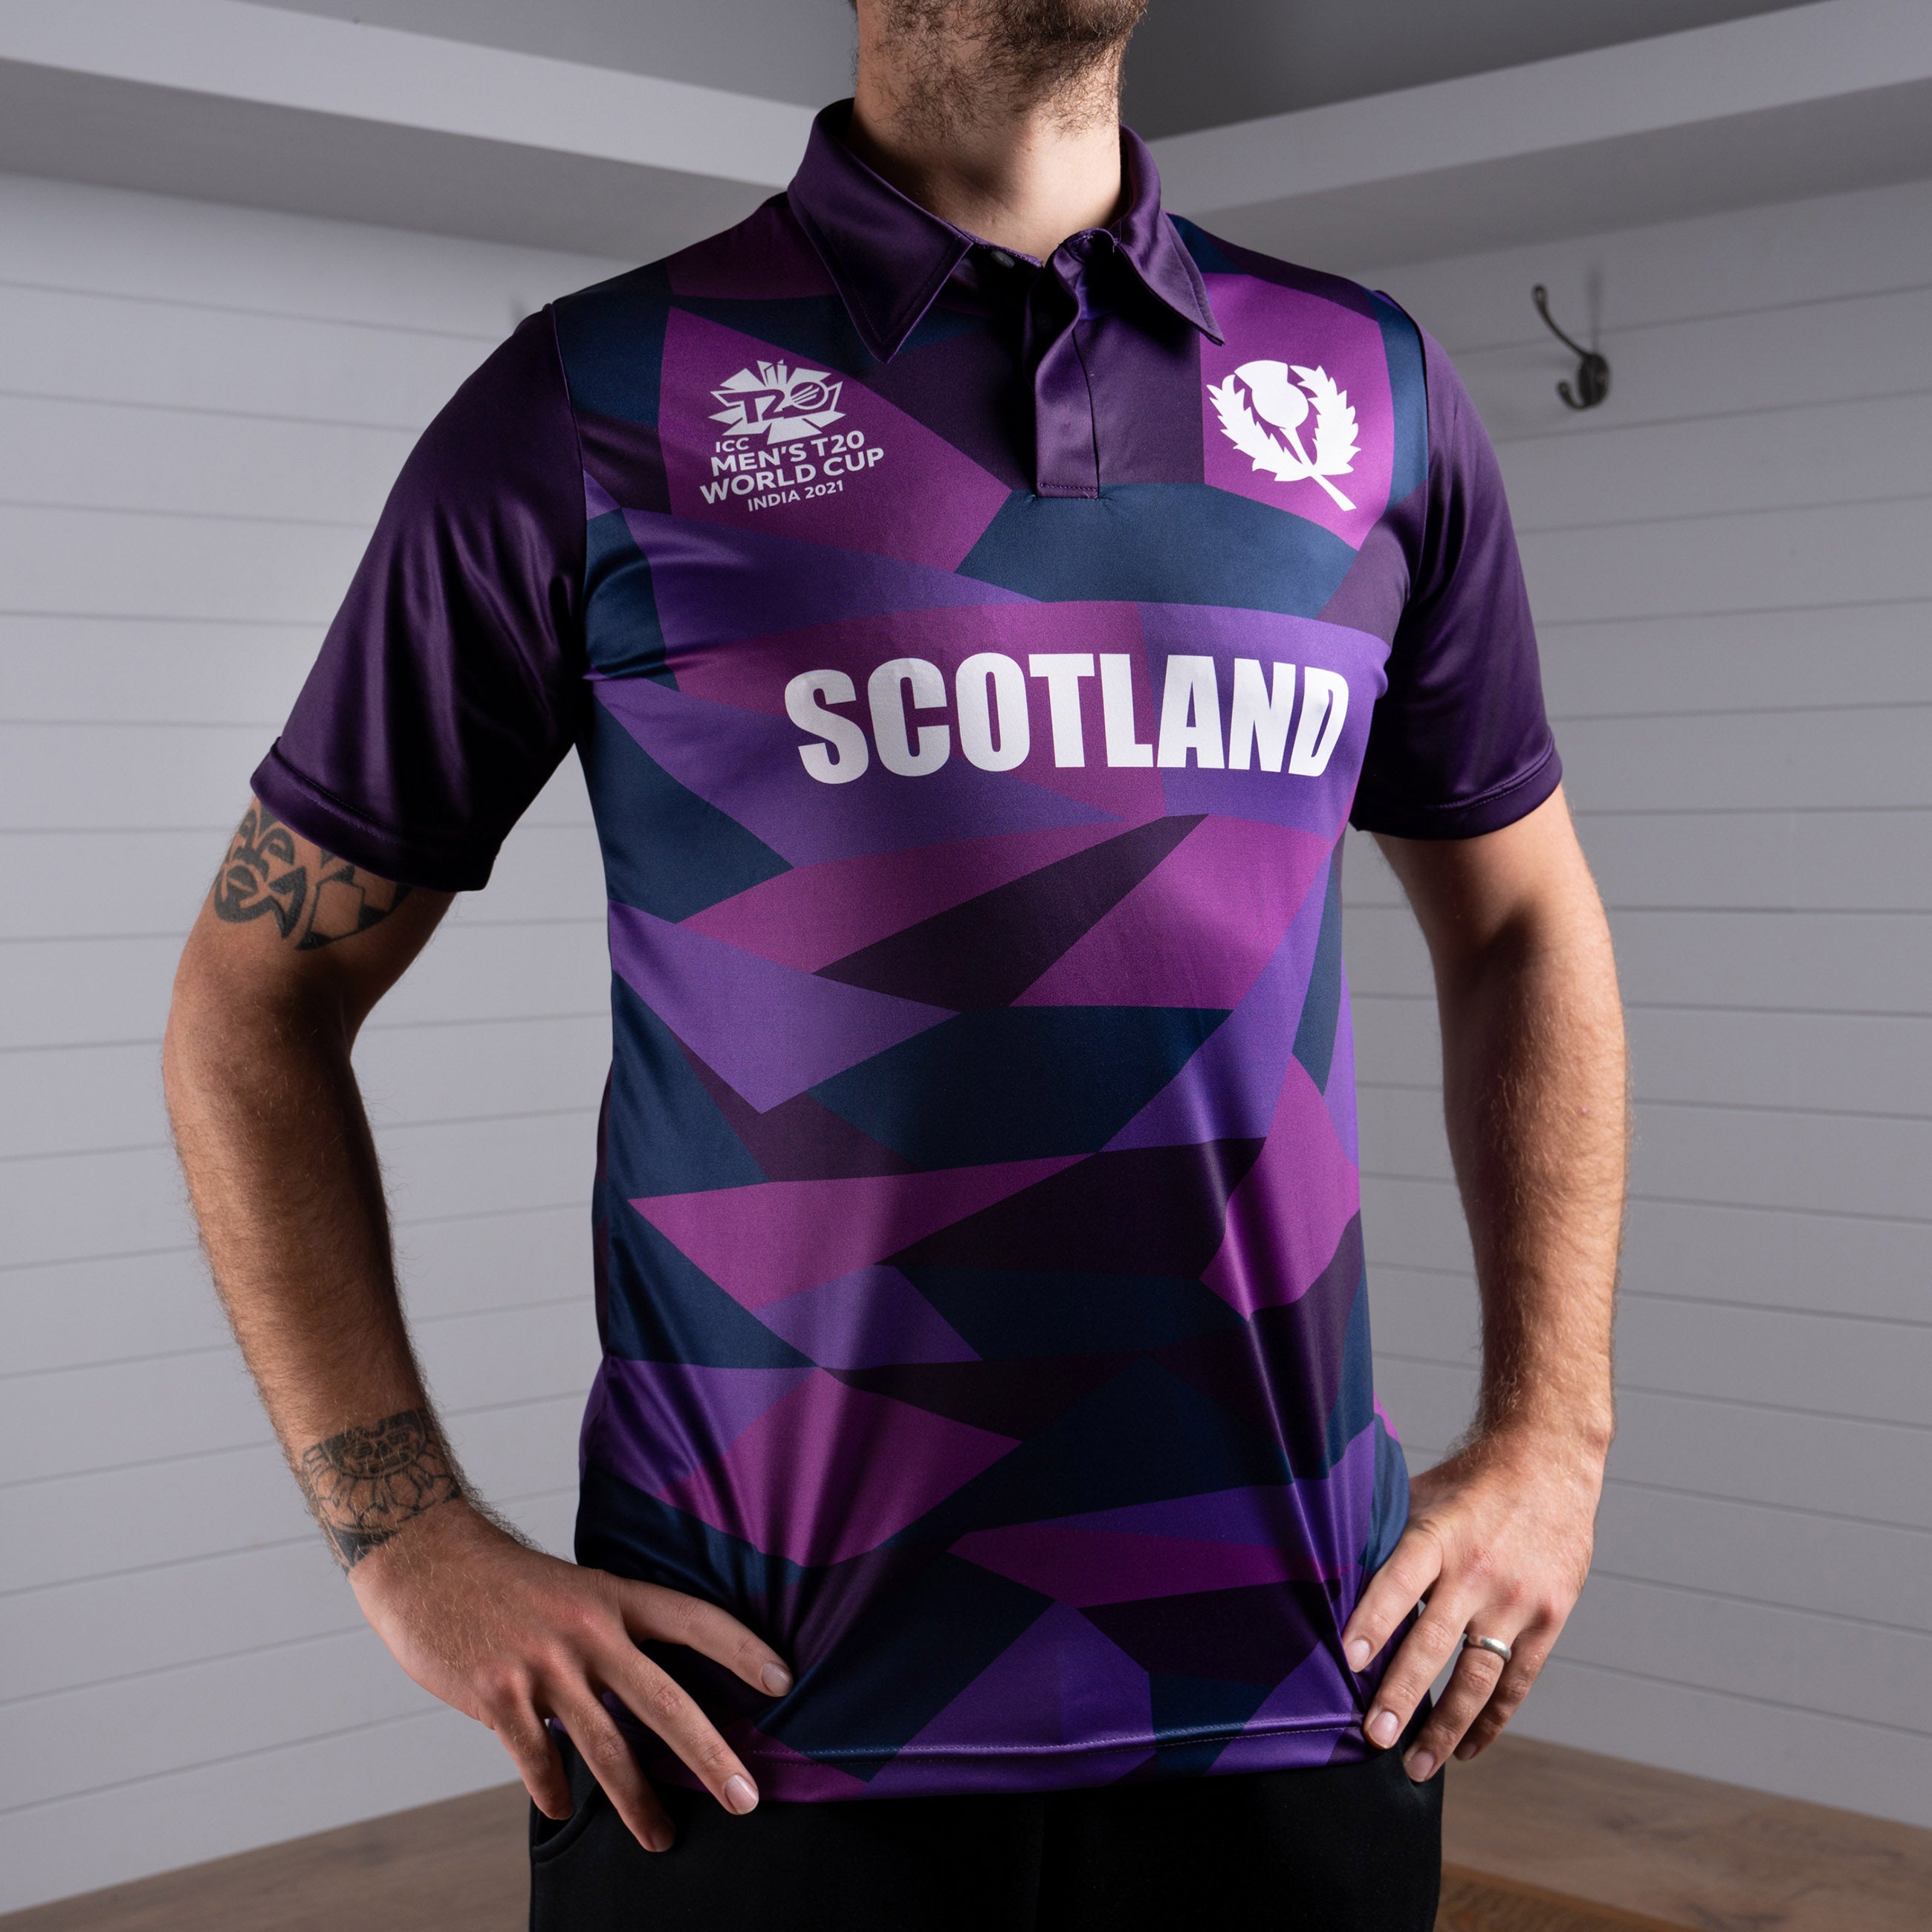 Cricket Scotland T20 World Cup Short Sleeve Shirt - Men's